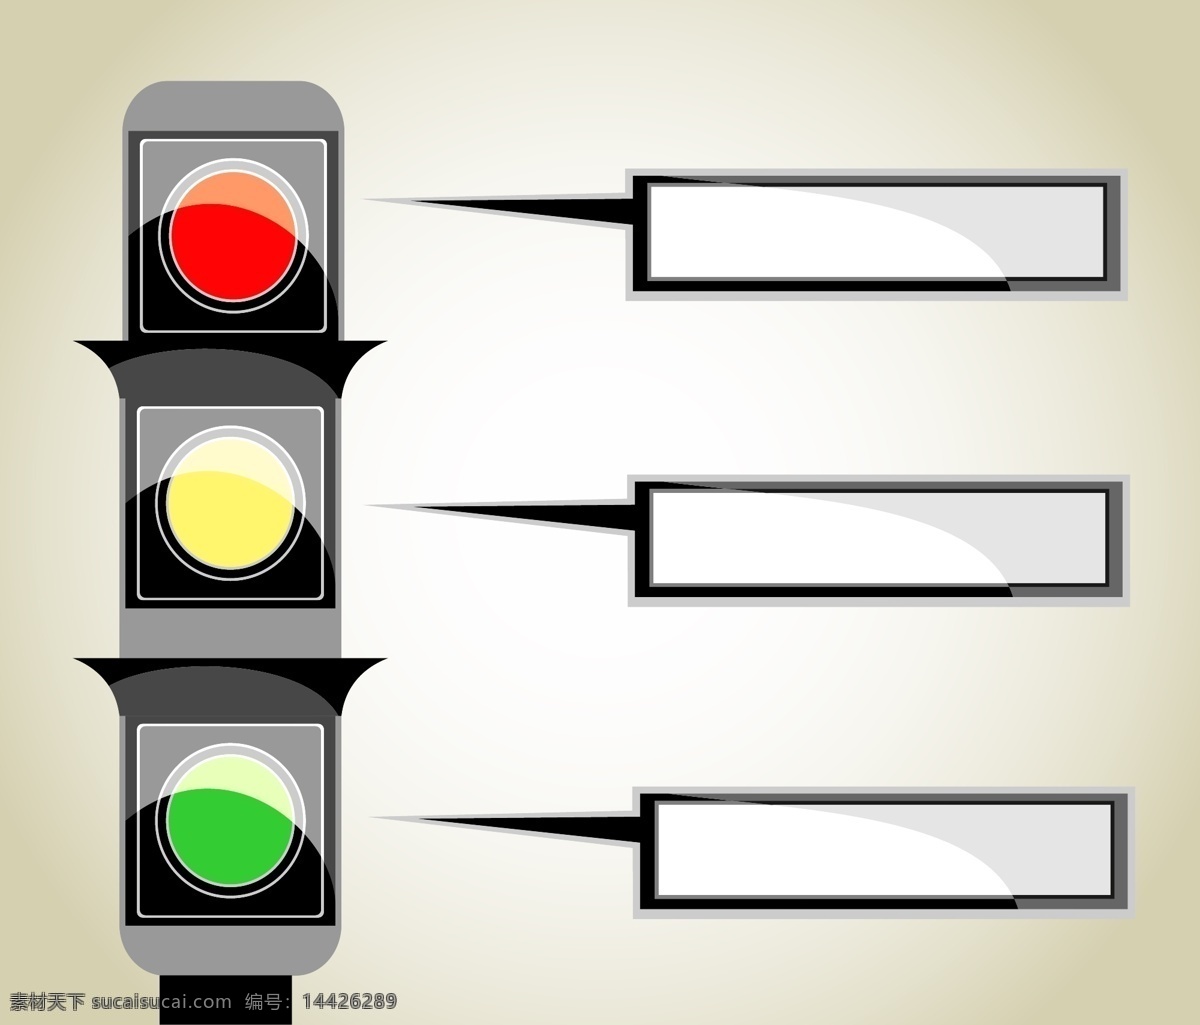 创意 红绿灯 标签 矢量 模板下载 红绿灯图标 红灯 绿灯 黄灯 马路灯 交通灯 生活百科 矢量素材 白色